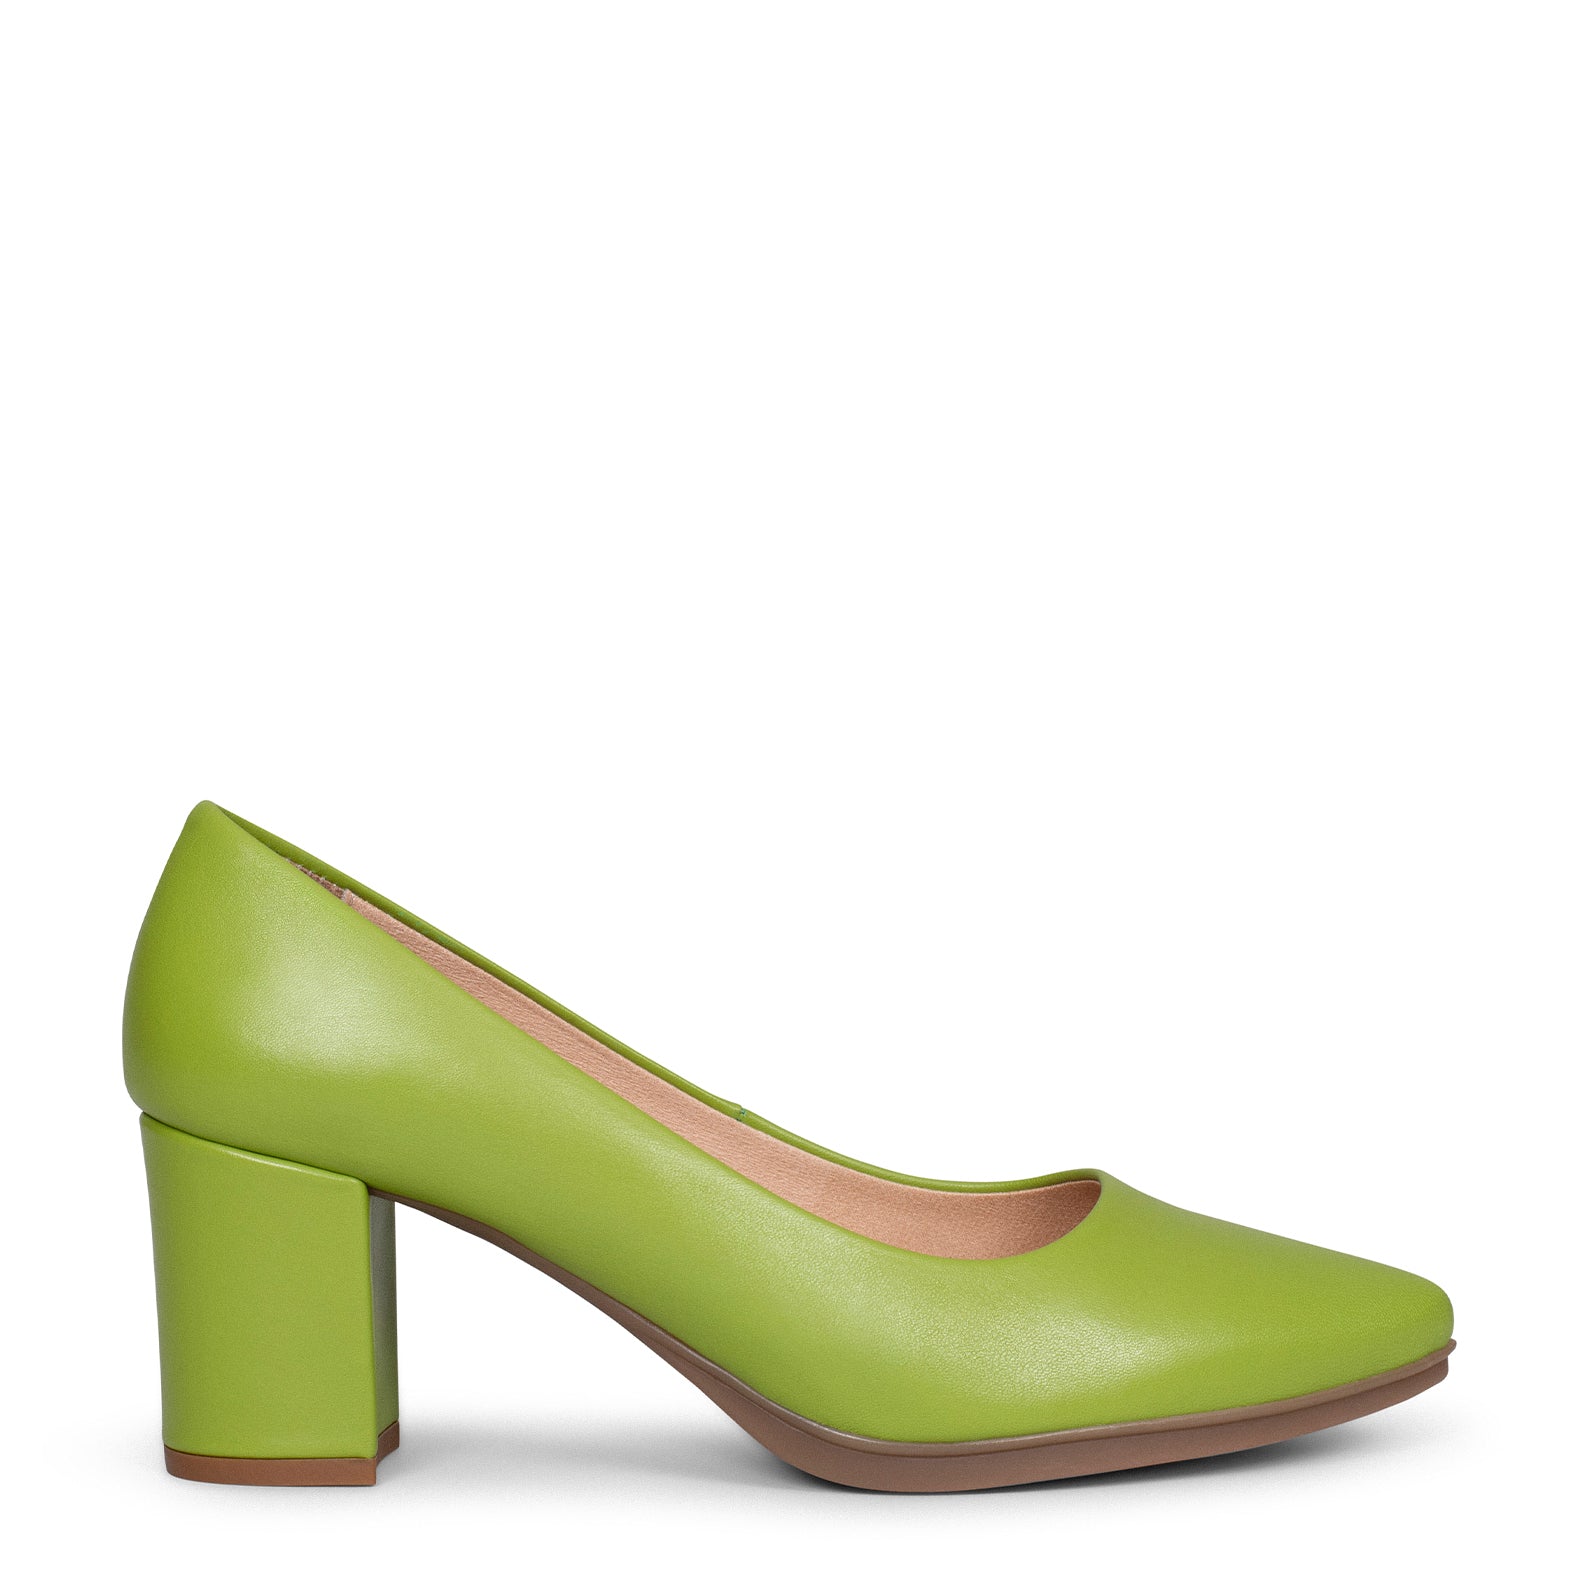 URBAN S SALON – PISTACHIO nappa leather mid heel